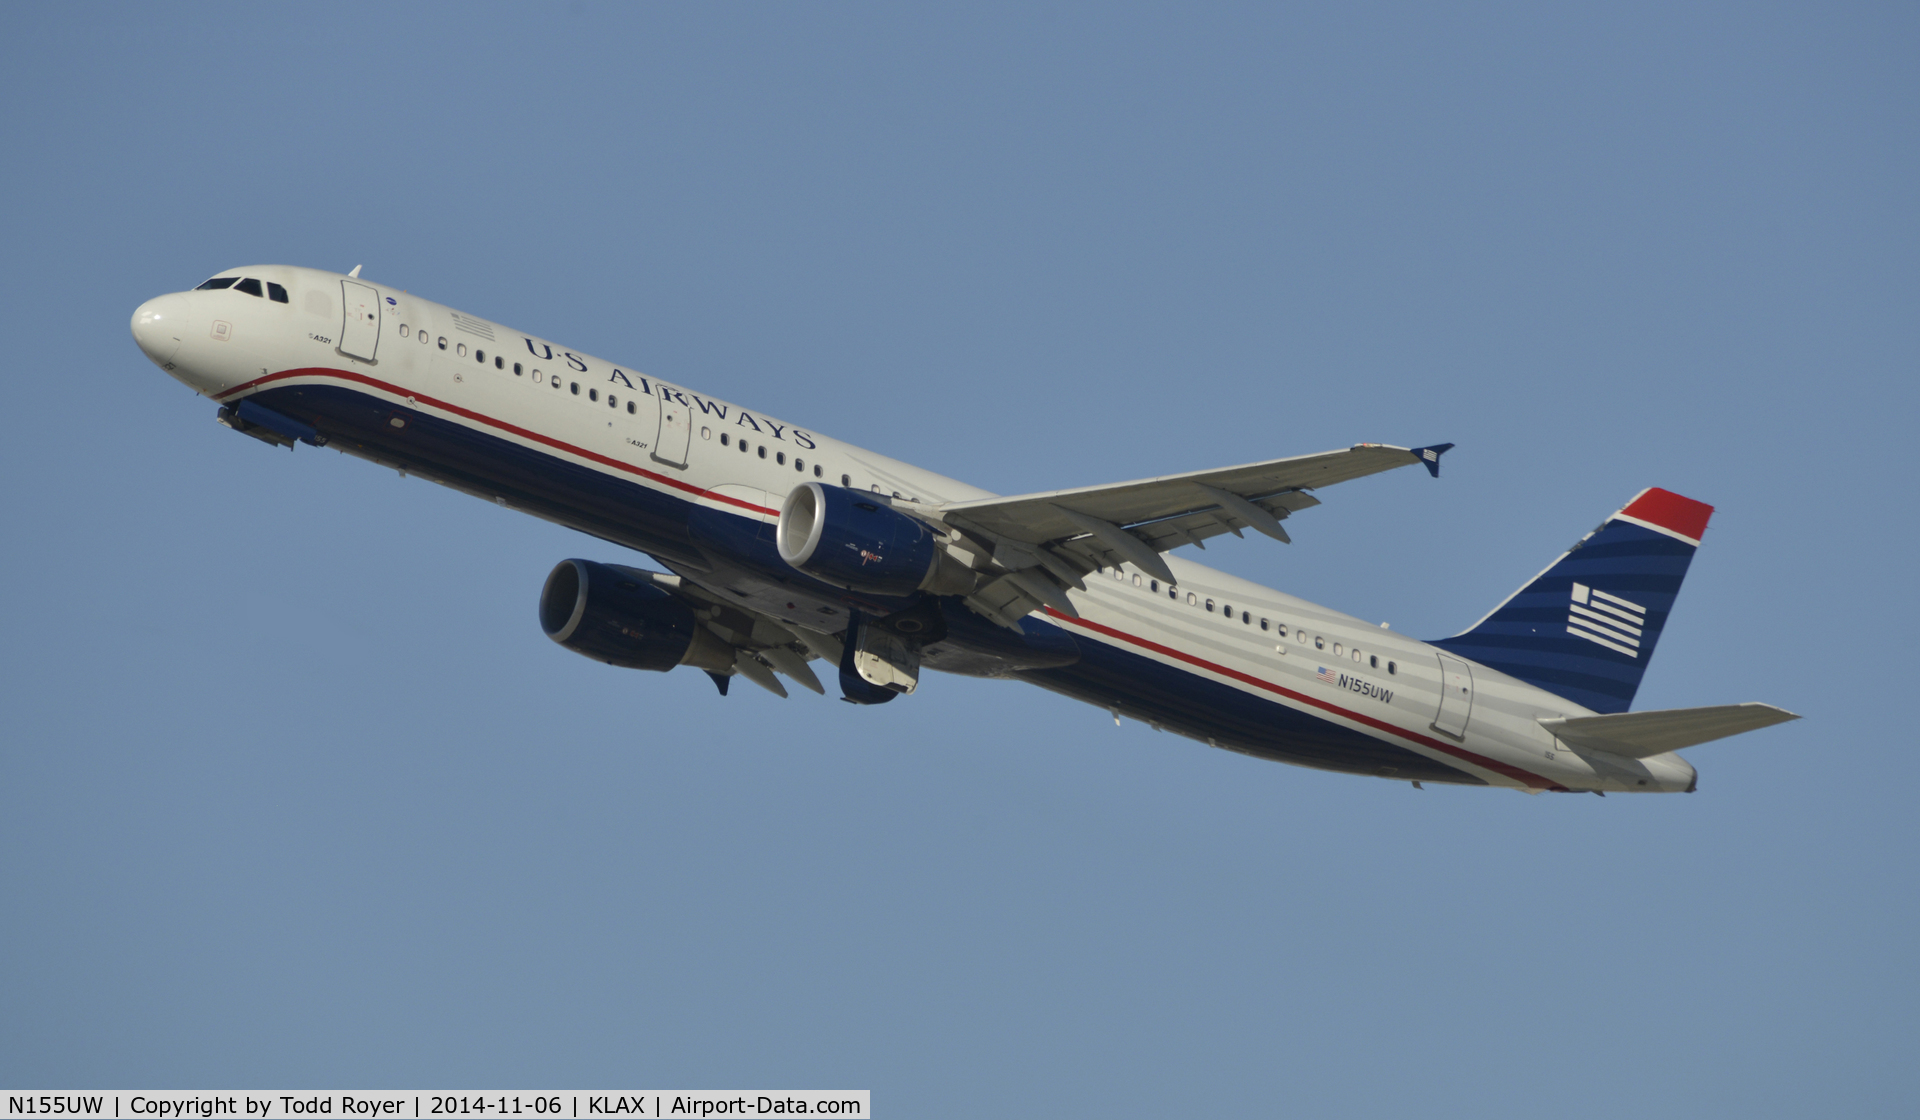 N155UW, 2013 Airbus A321-211 C/N 5659, Departing LAX on 25R